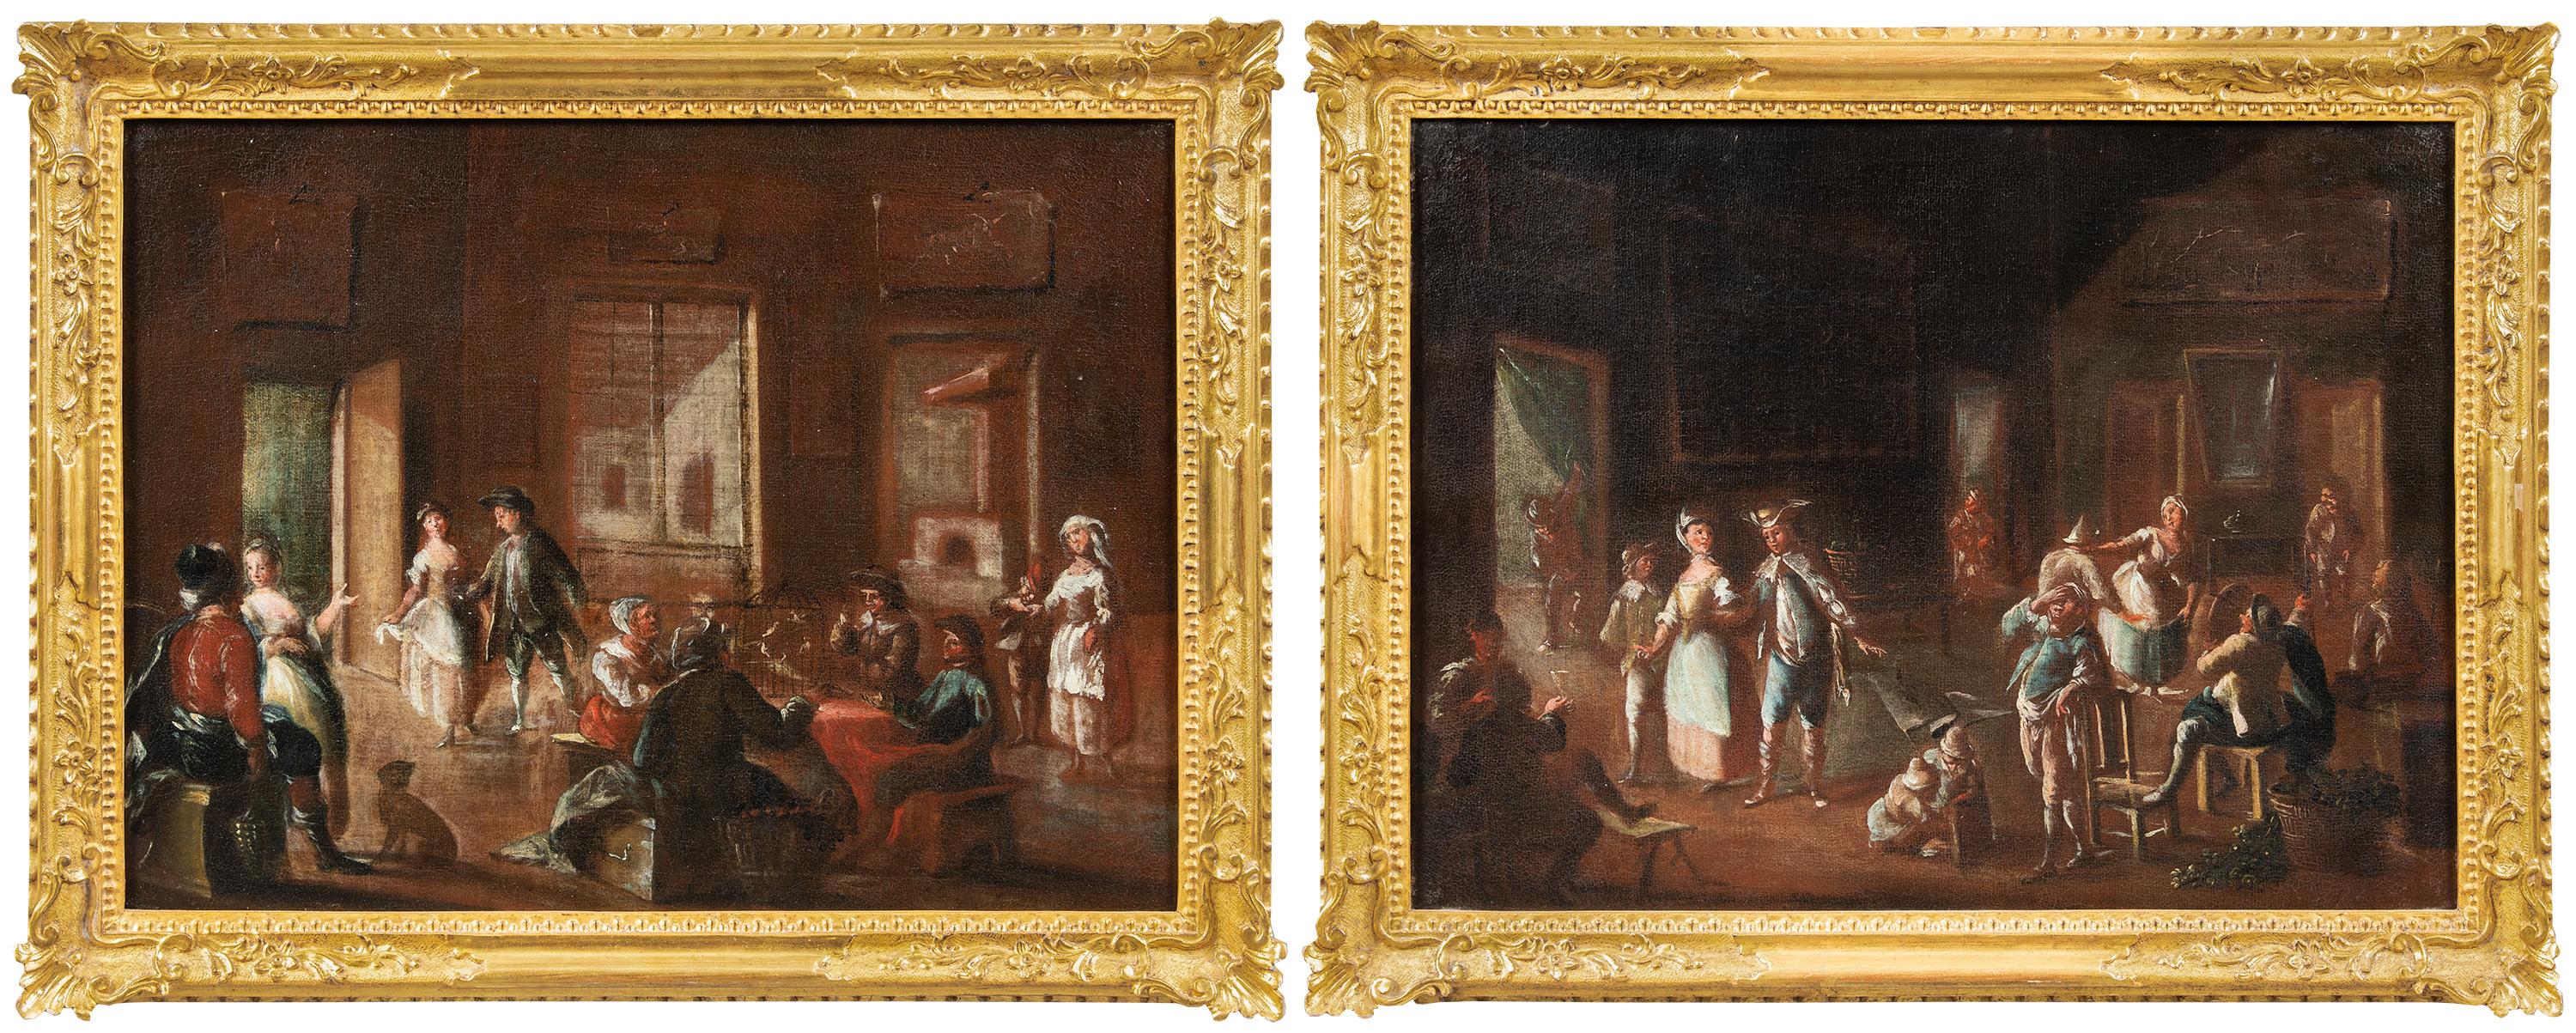 Lorenzo Gramiccia (Höhle 1702/1704 - Venedig 1795) - Zwei venezianische Interieurs.

45 x 60 cm ohne Rahmen, 55 x 70 cm mit Rahmen.

Zwei antike Ölgemälde auf Leinwand, in geschnitzten und vergoldeten Holzrahmen. Das Gemälde kann aufgrund